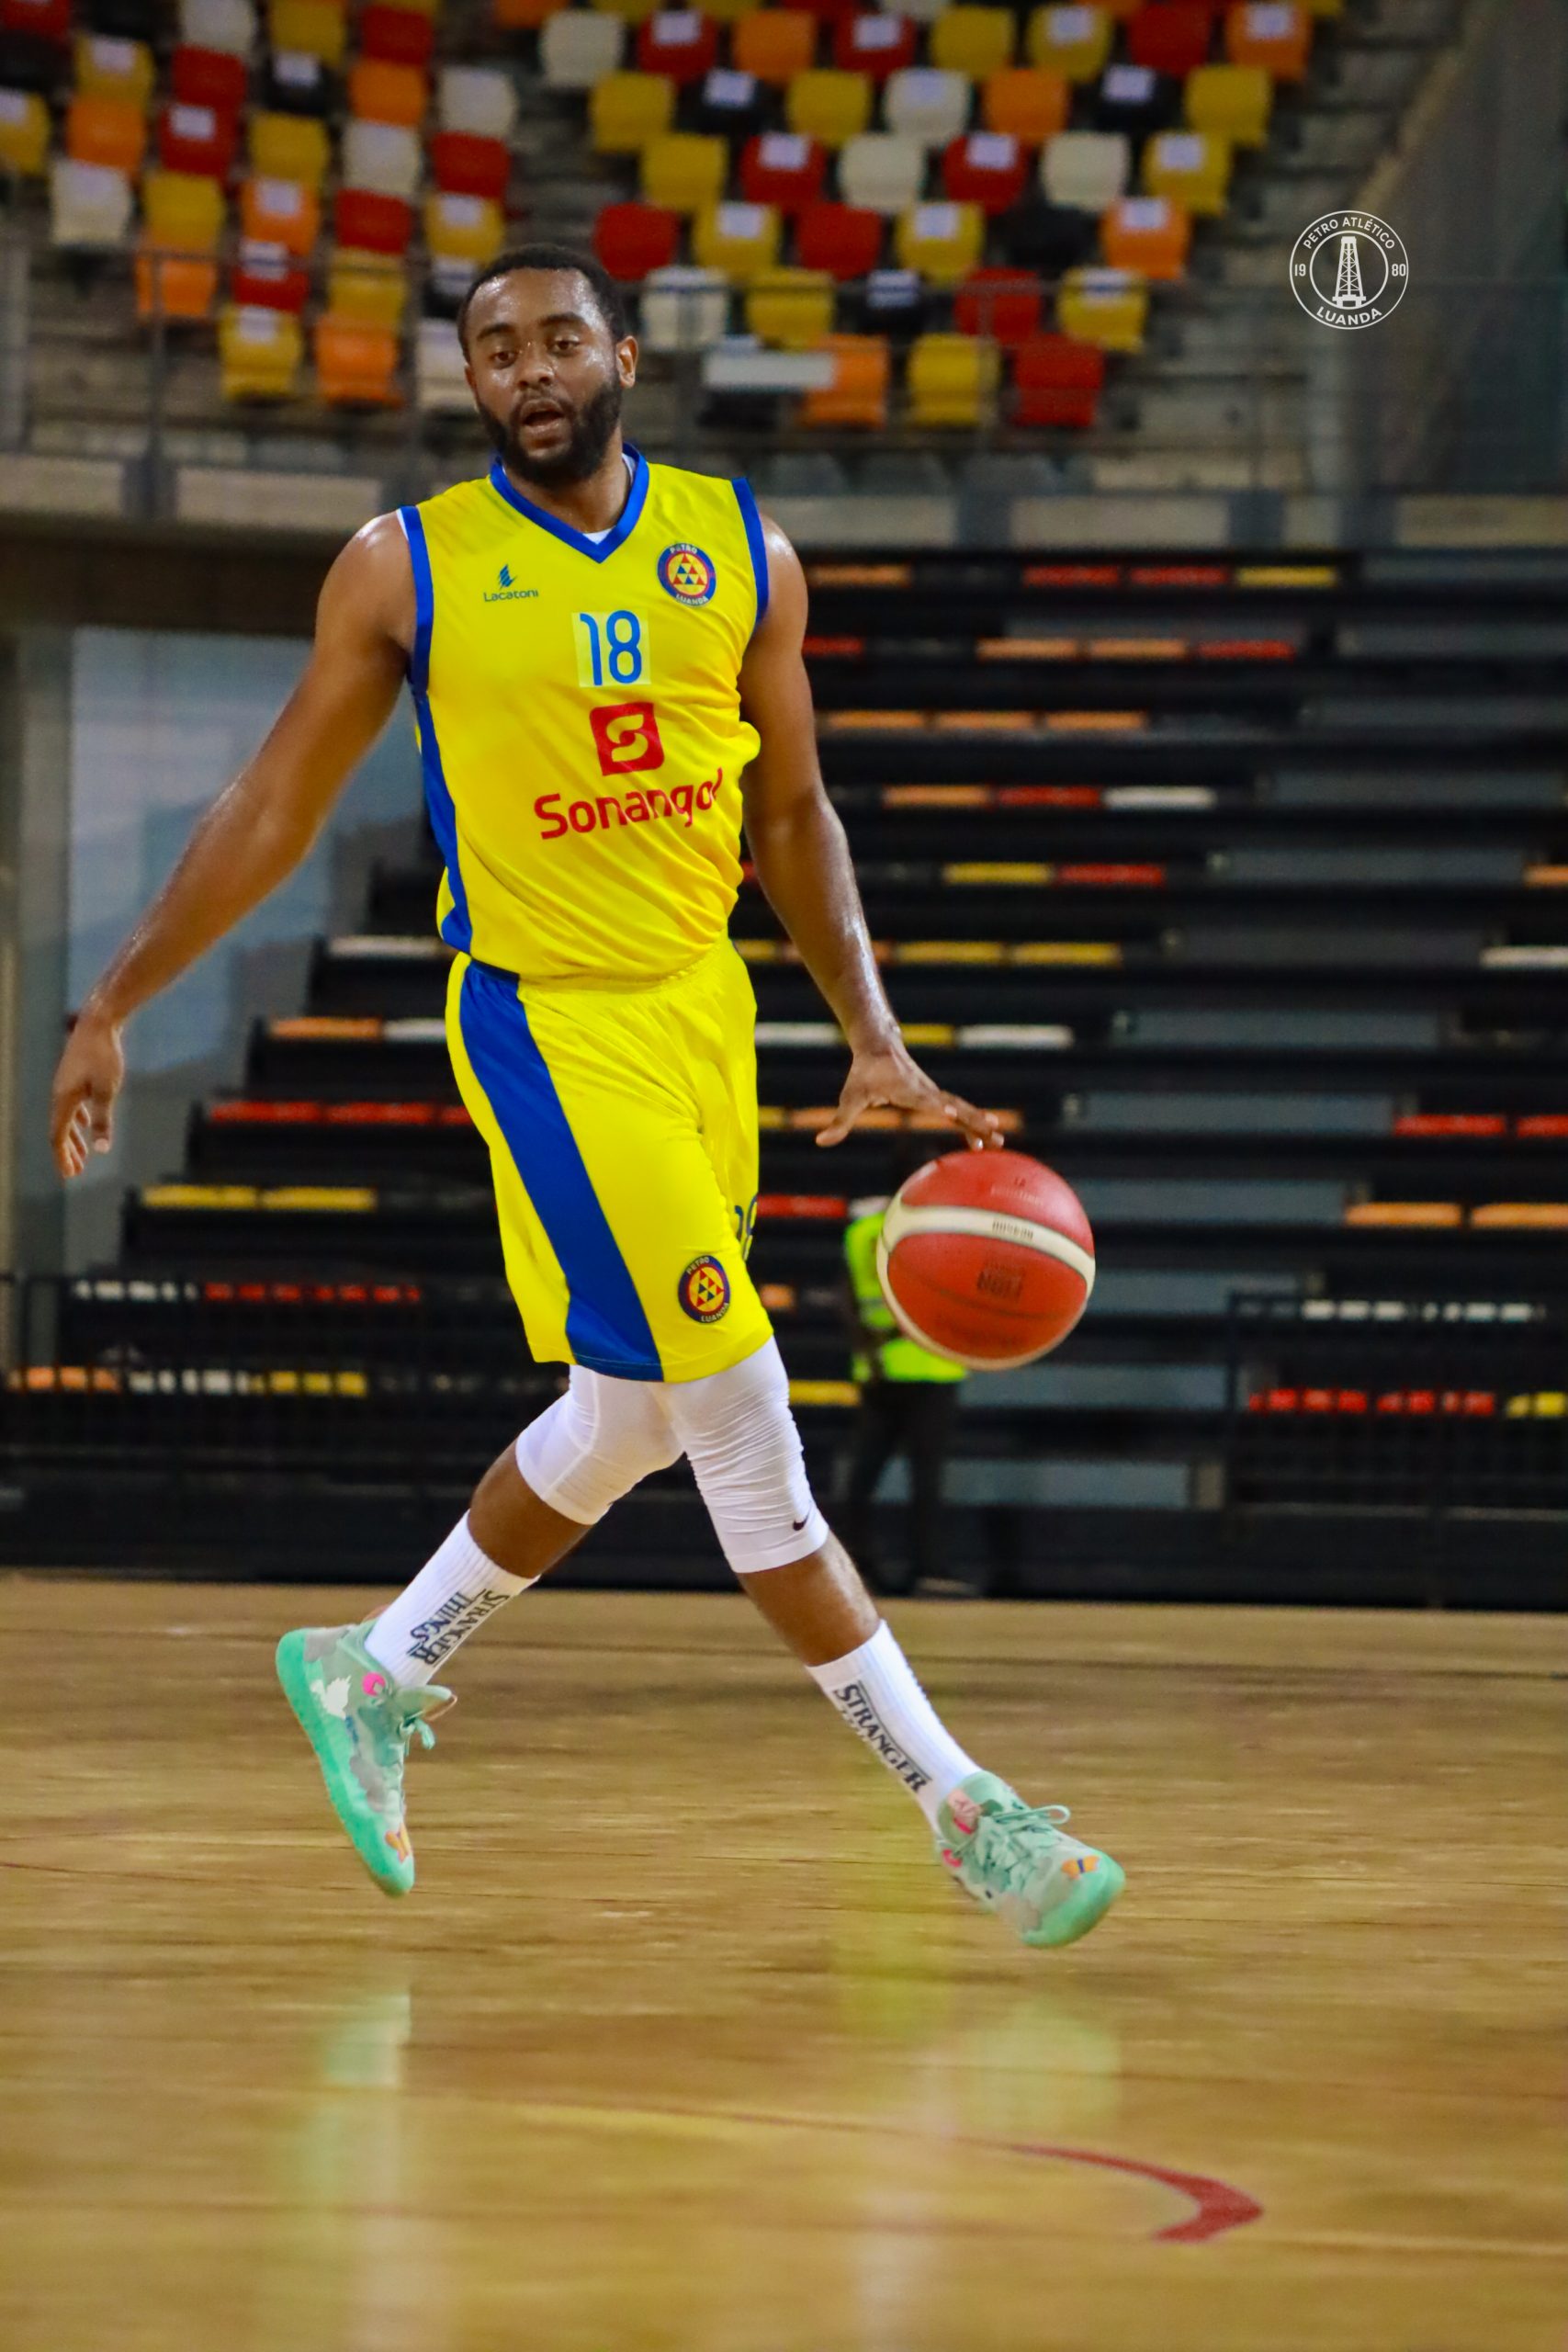 Petro de Luanda e 1ºde Agosto a uma vitória da final do basquetebol – RNA